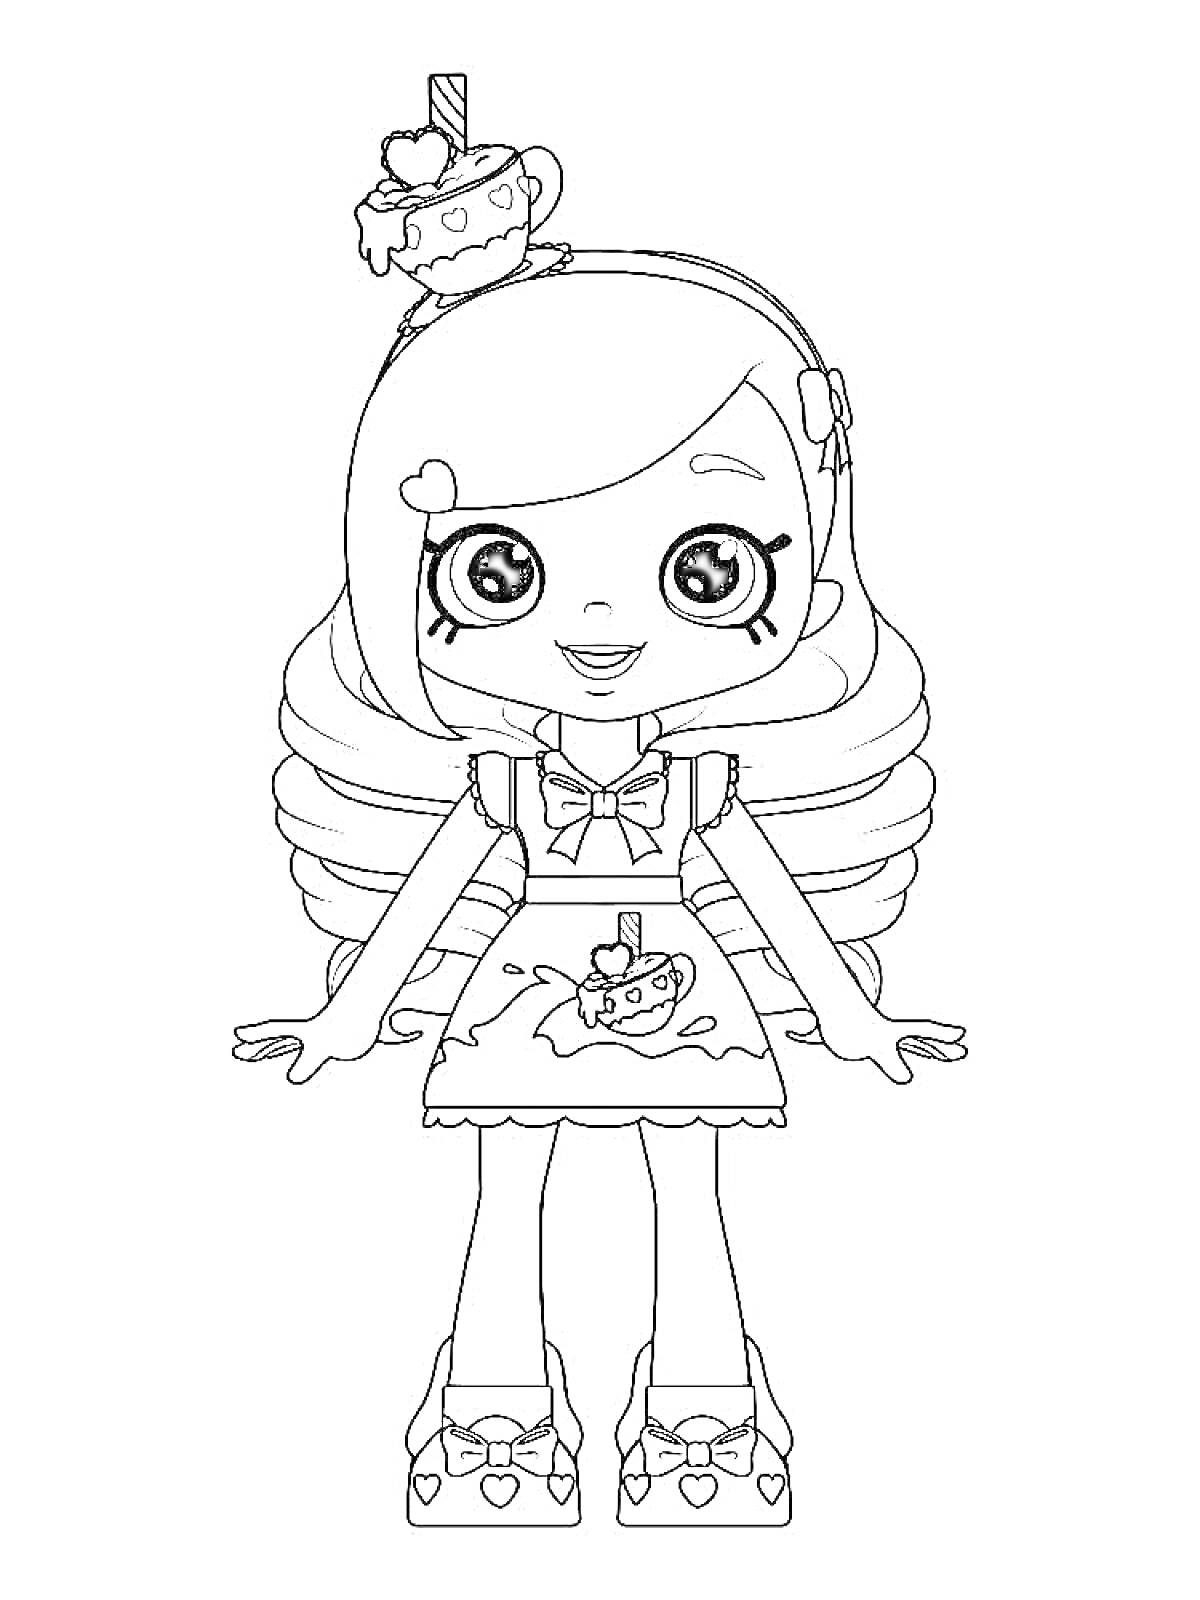 Раскраска Девочка с чашкой чая на голове, платье с мороженым, бантики на голове и обуви, длинные волосы